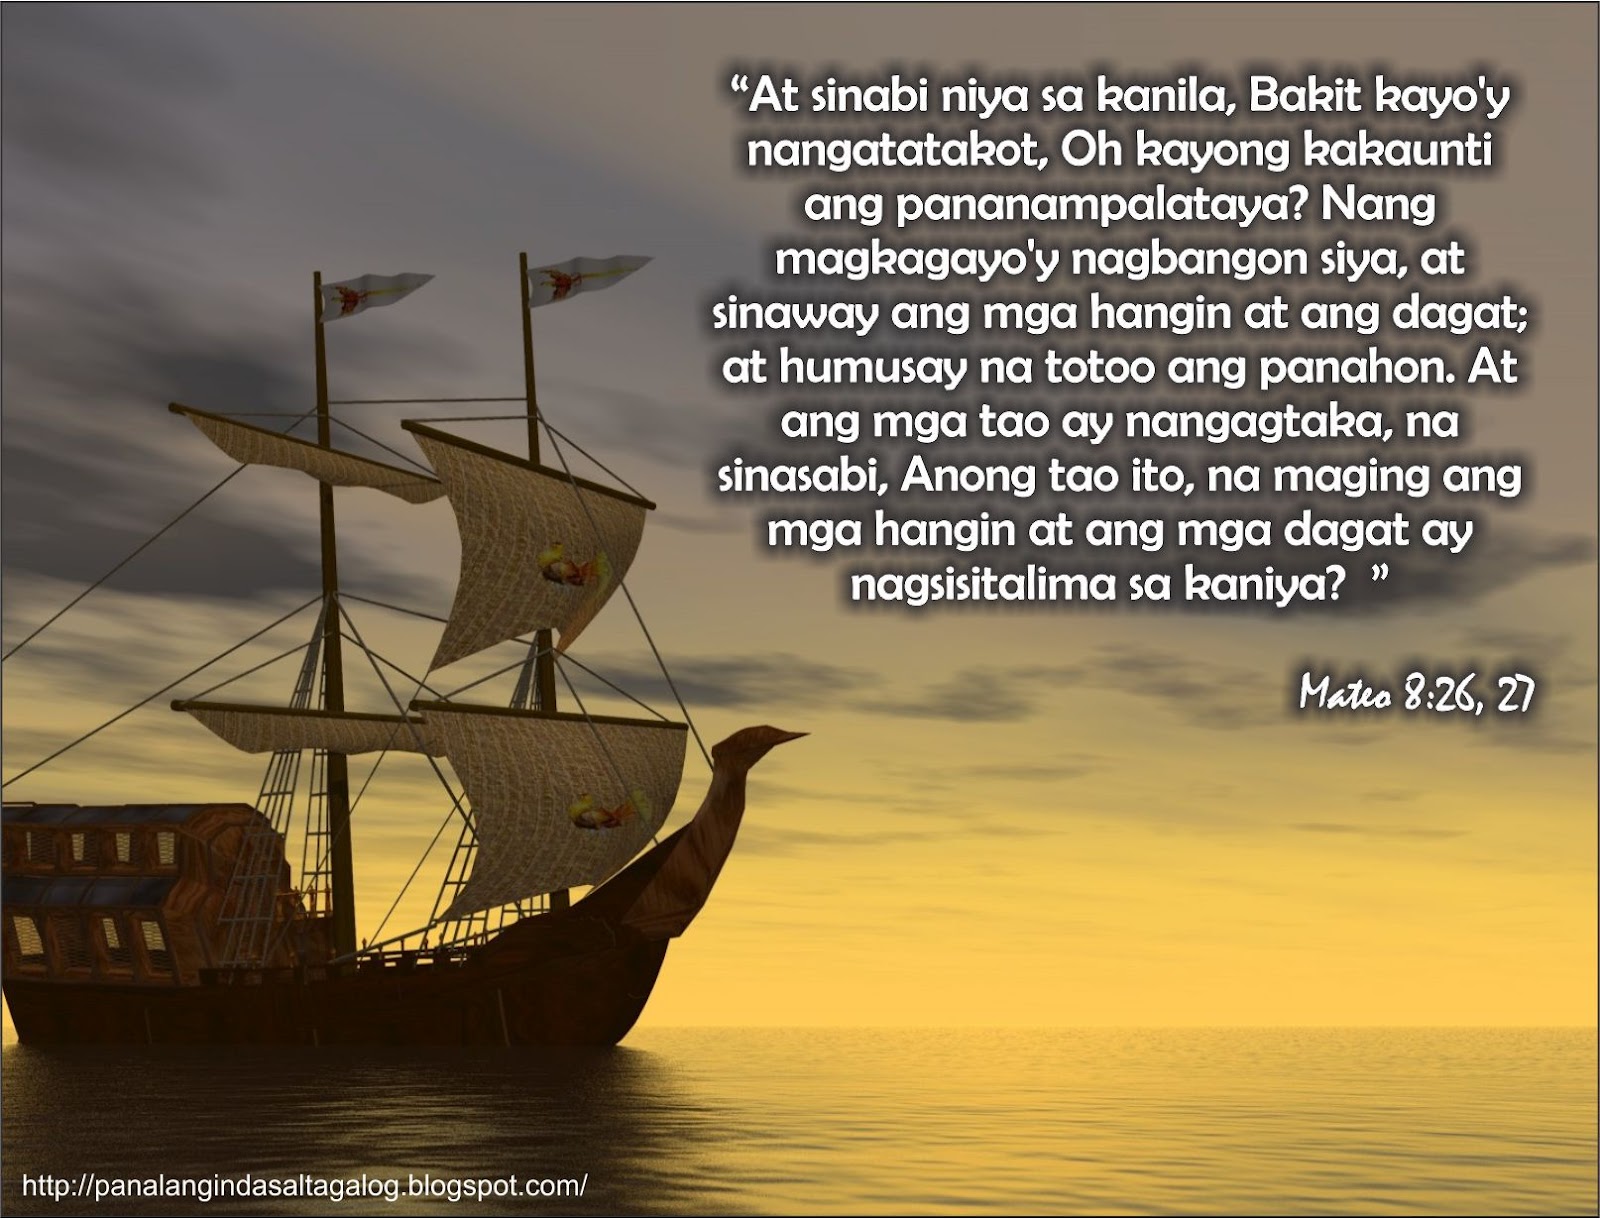 Mga Tagalog Na Panalangin Panalangin Pagkatapos Ng Klase - Mobile Legends